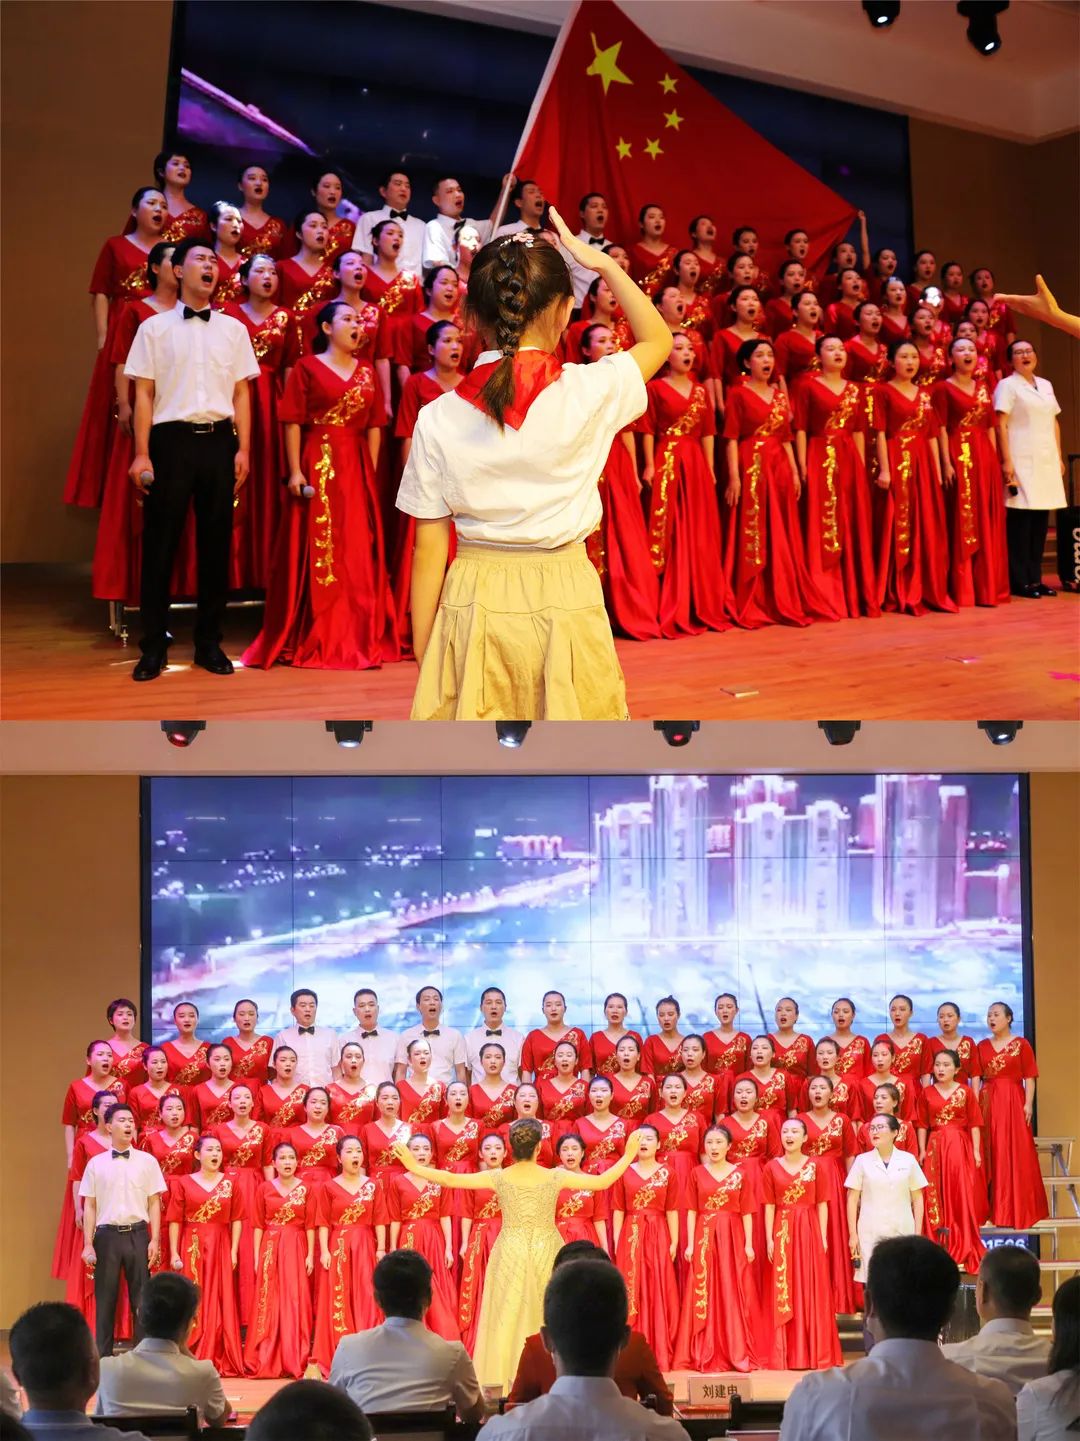 西安高新医院 「红歌颂党恩 再创新辉煌」主题红歌歌唱活动热力开唱